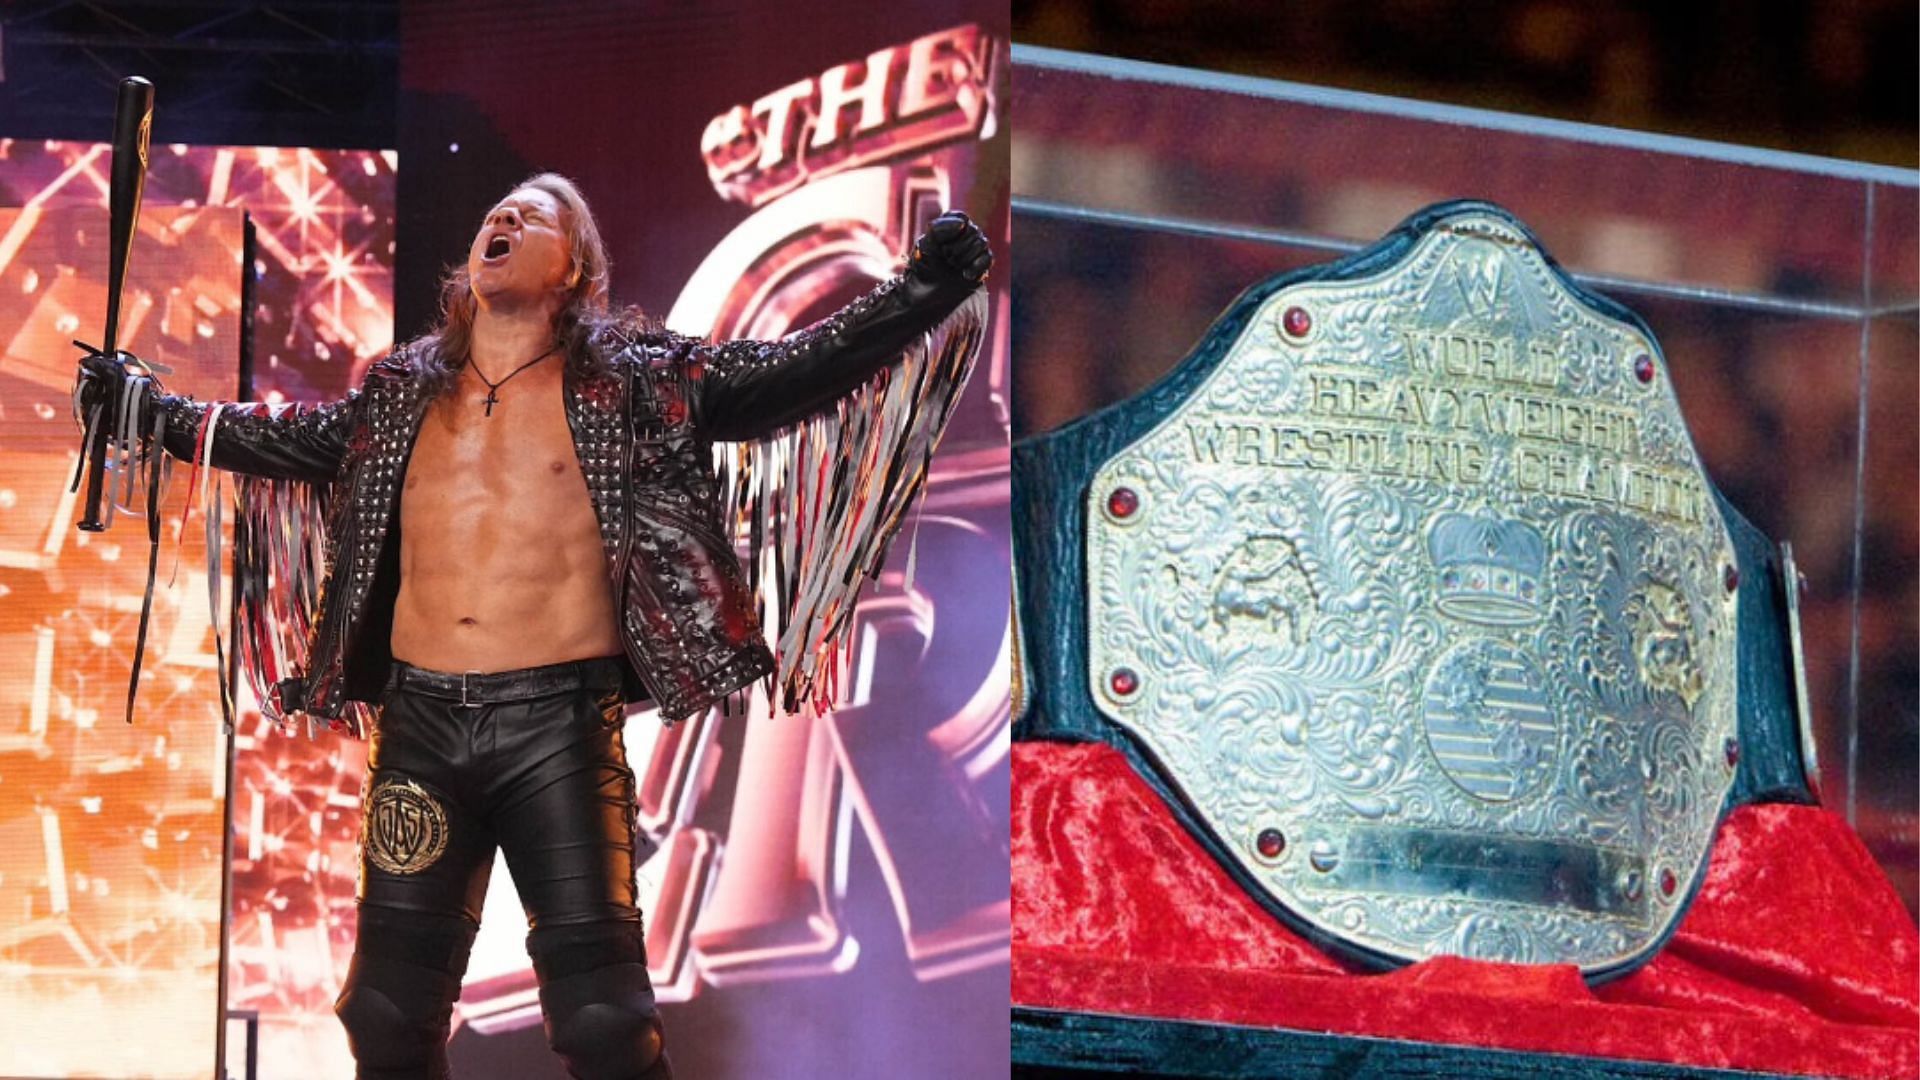 Chris Jericho is a former WWE World Heavyweight Champion [Image Credits: Jericho